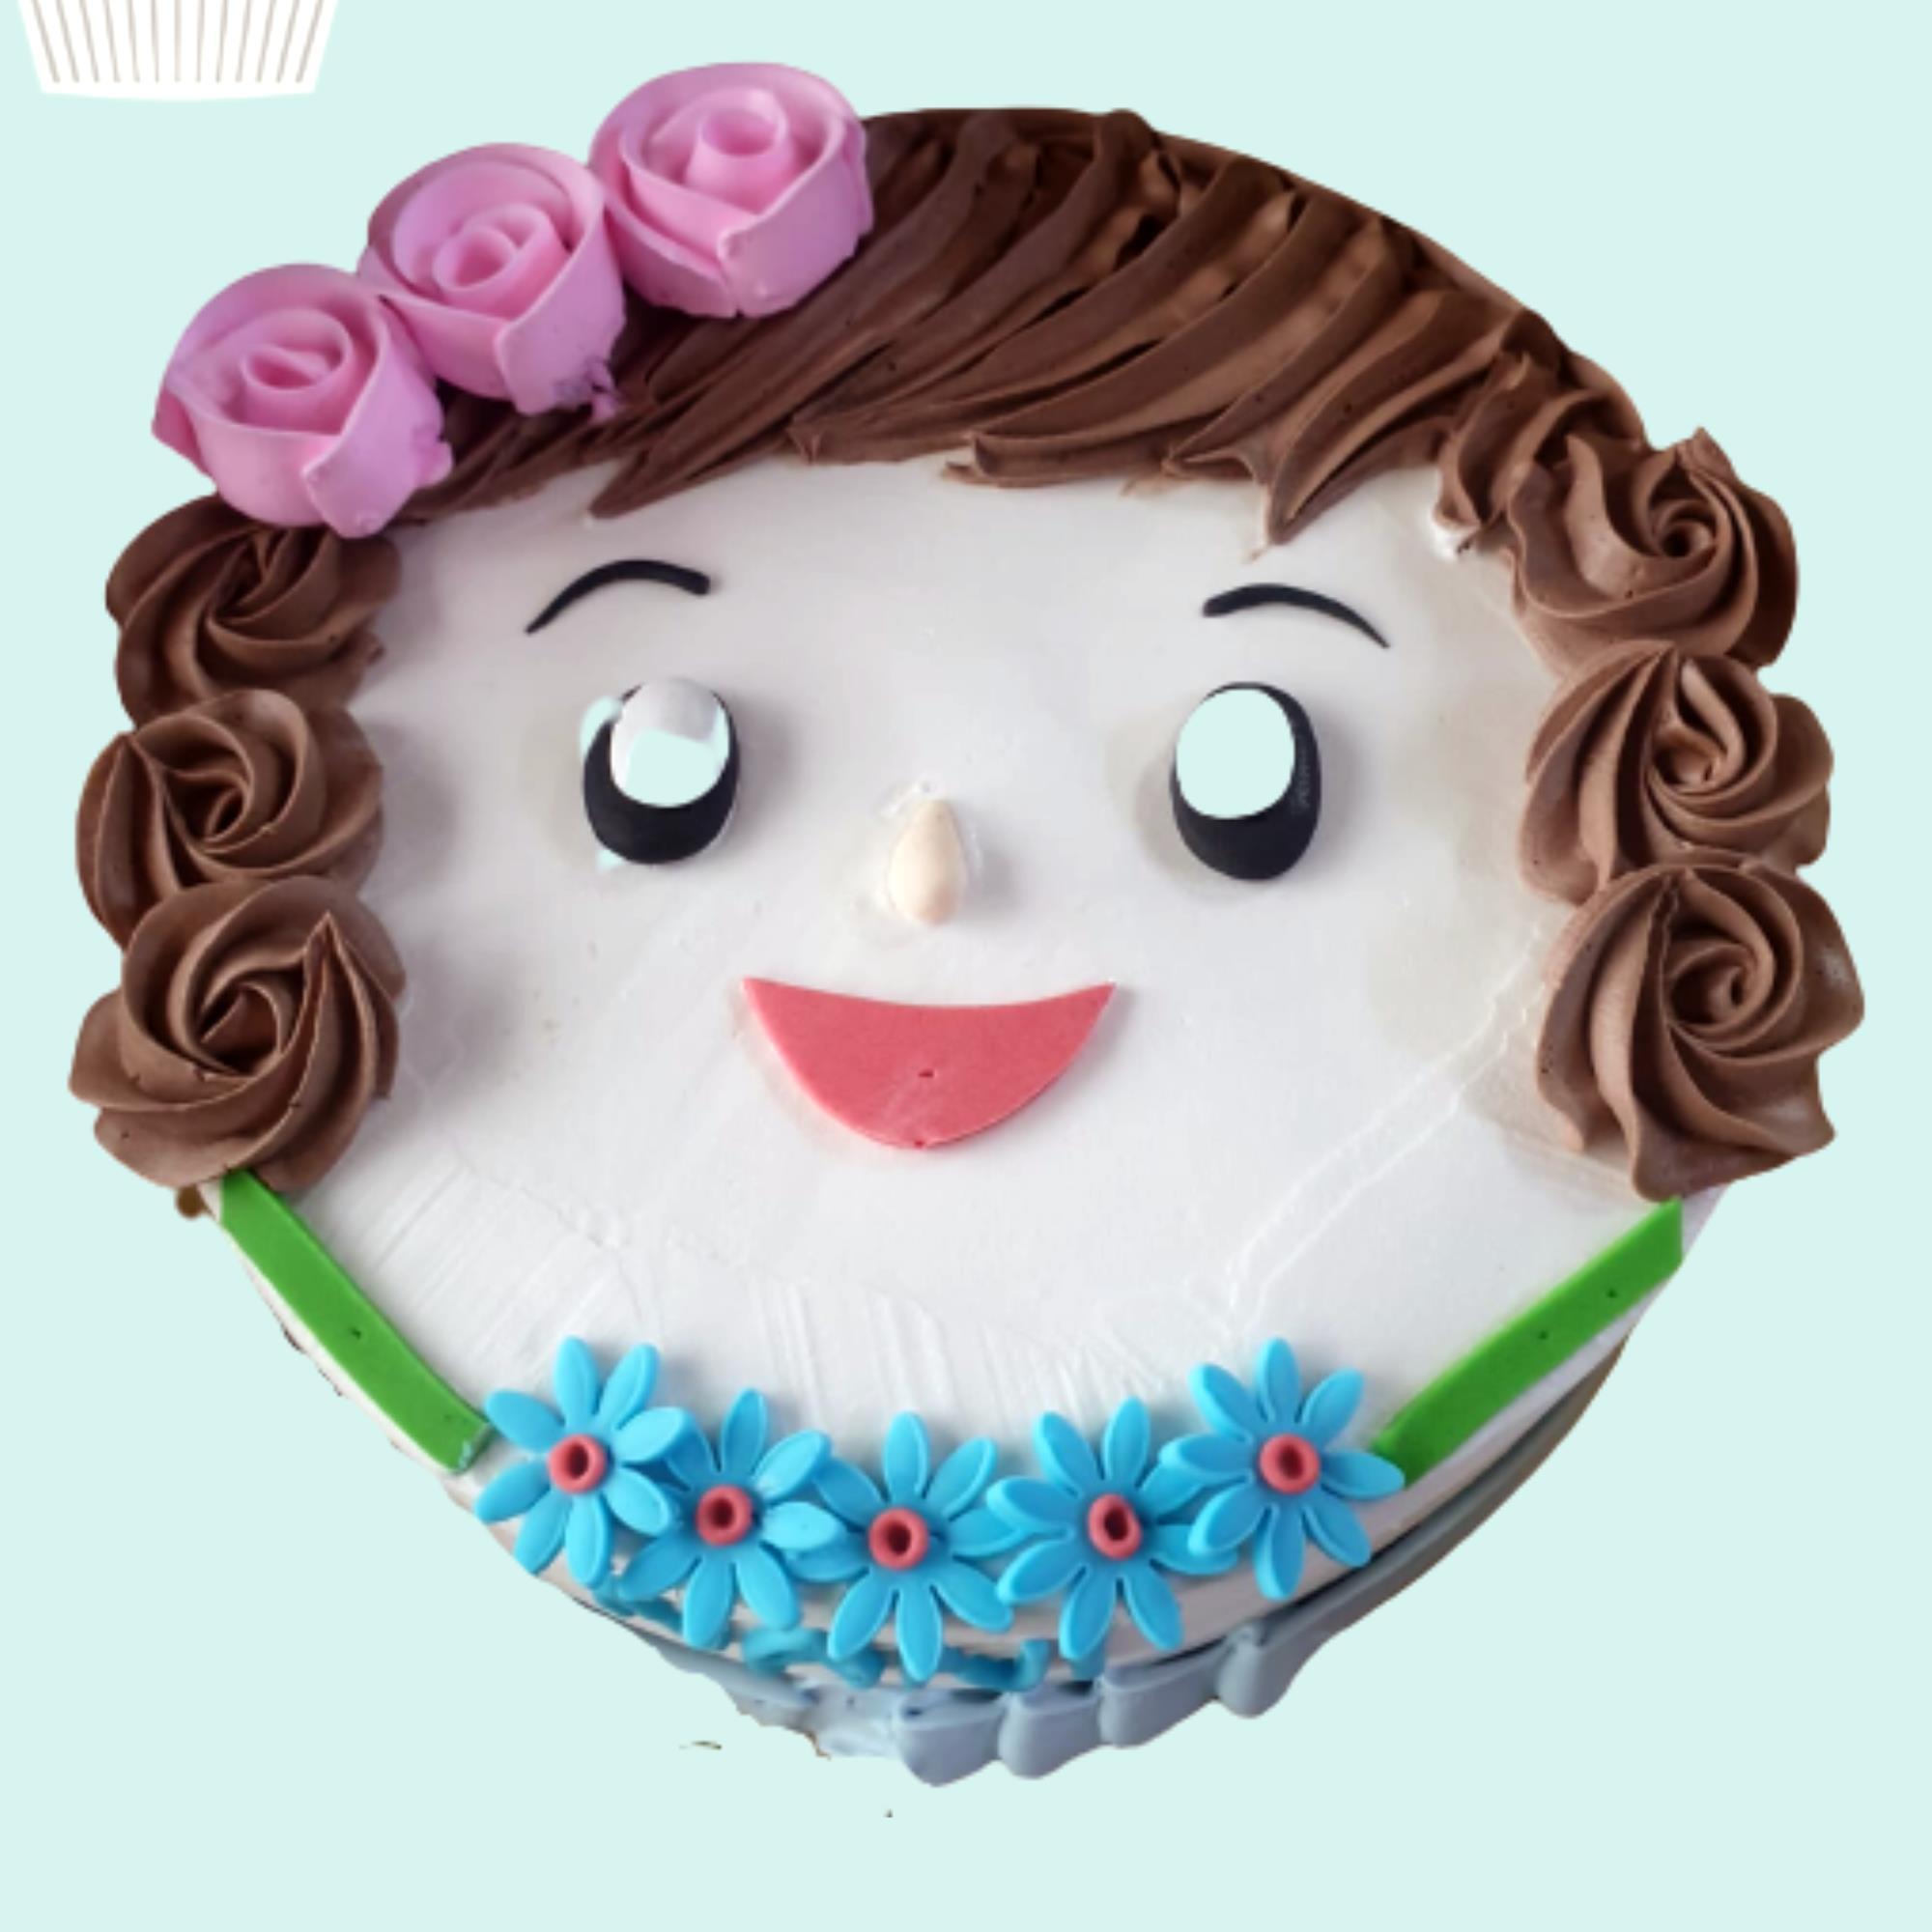 Birthday Cake Ideas For Girls | POPSUGAR Family